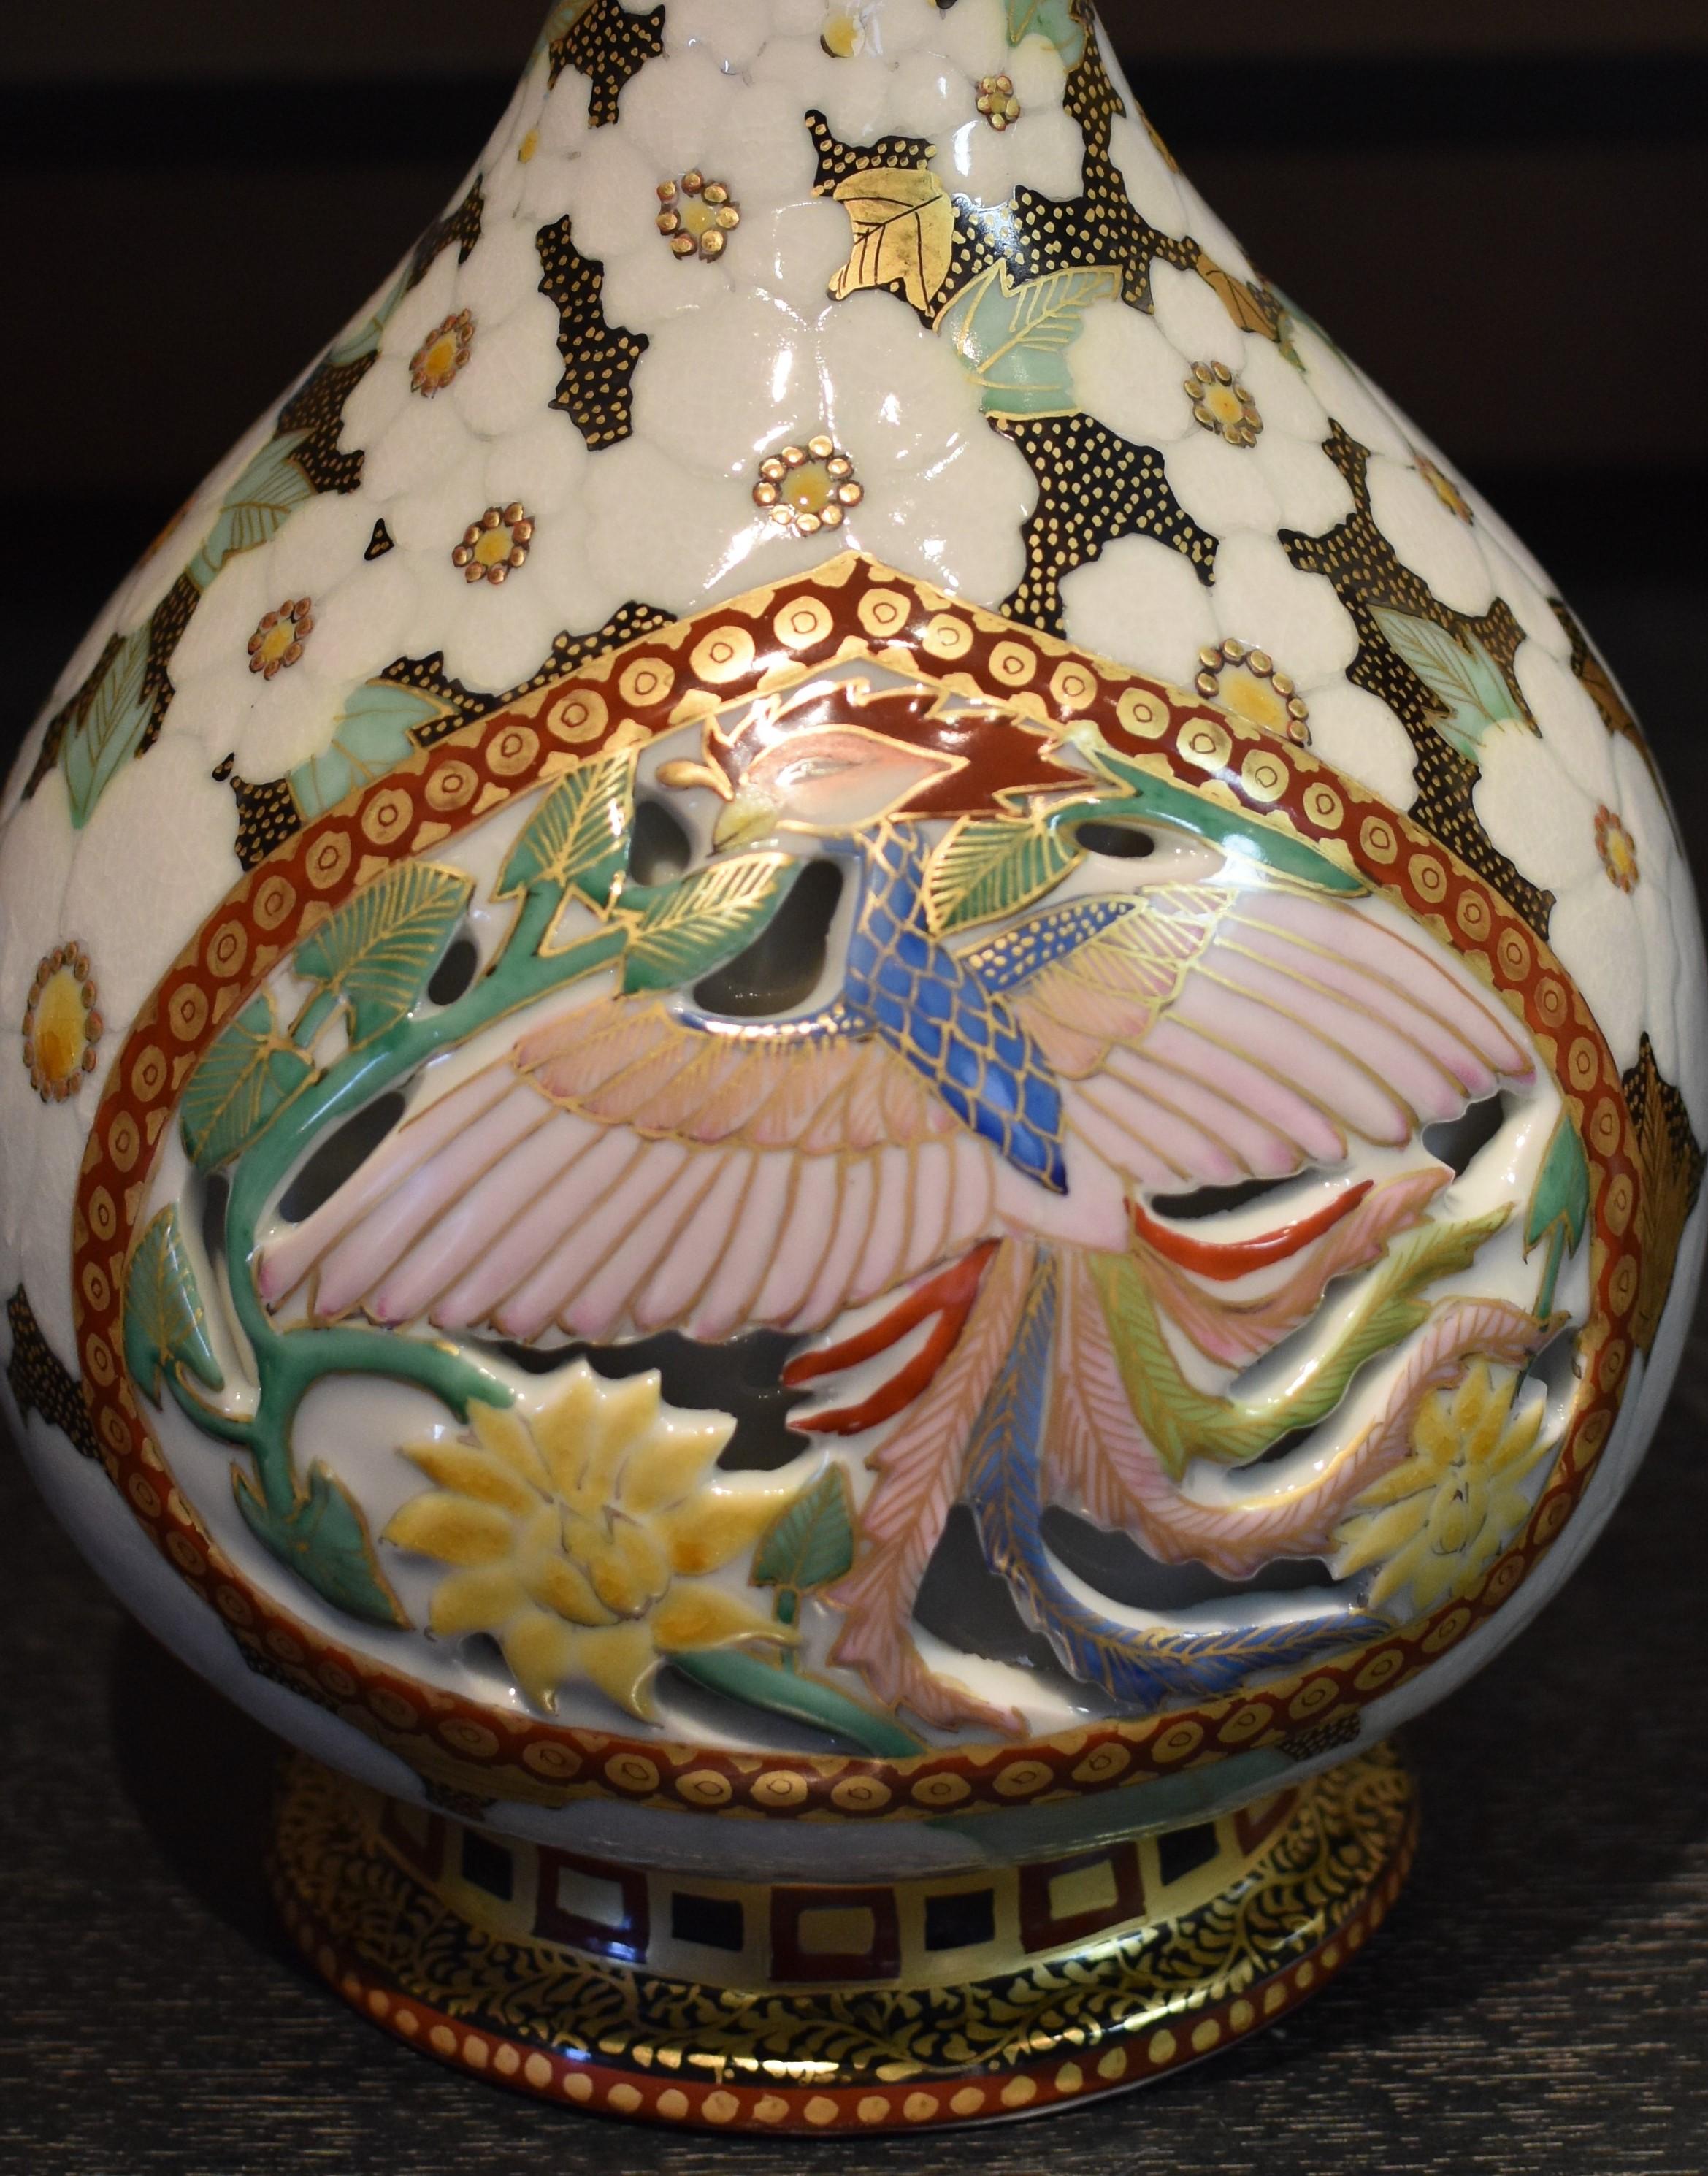 Extraordinaire vase japonais contemporain en porcelaine à oreilles de lion doré, comportant deux panneaux sculptés représentant les créatures de la mythologie chinoise ancienne - le phénix en plein vol et le dragon qui se lève. Il s'agit d'un